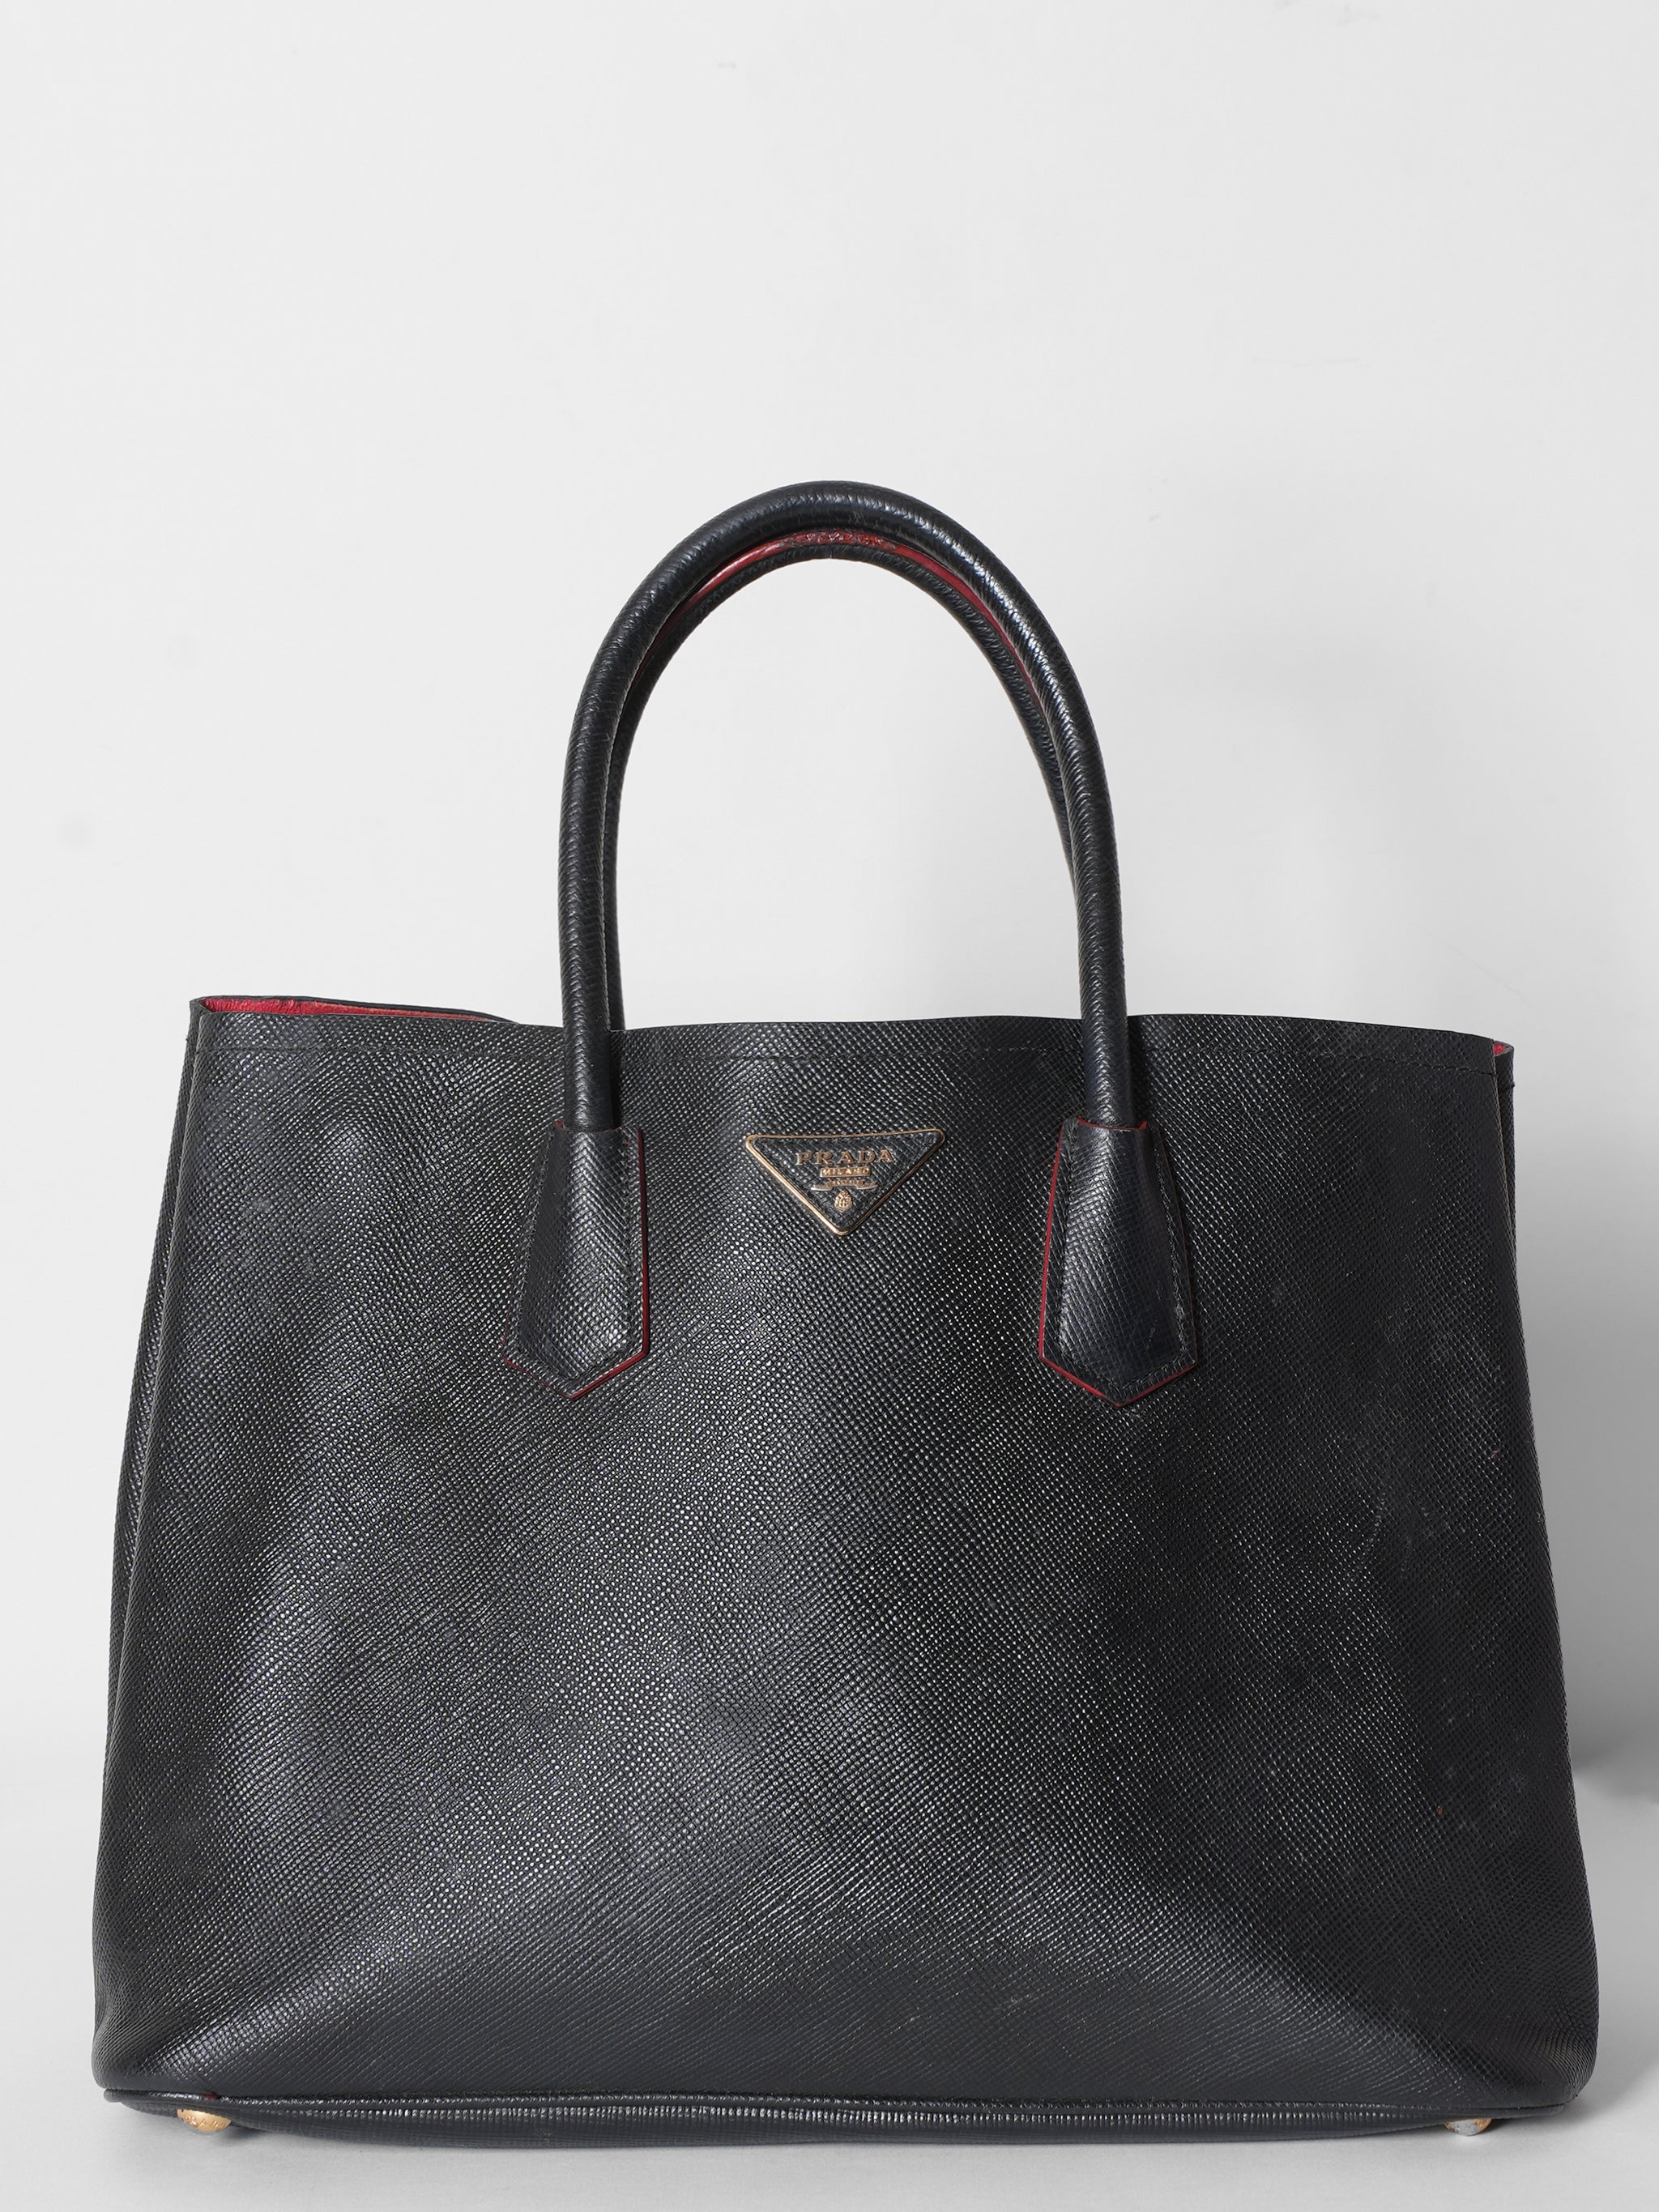 Prada Black Saffiano Tote Bag